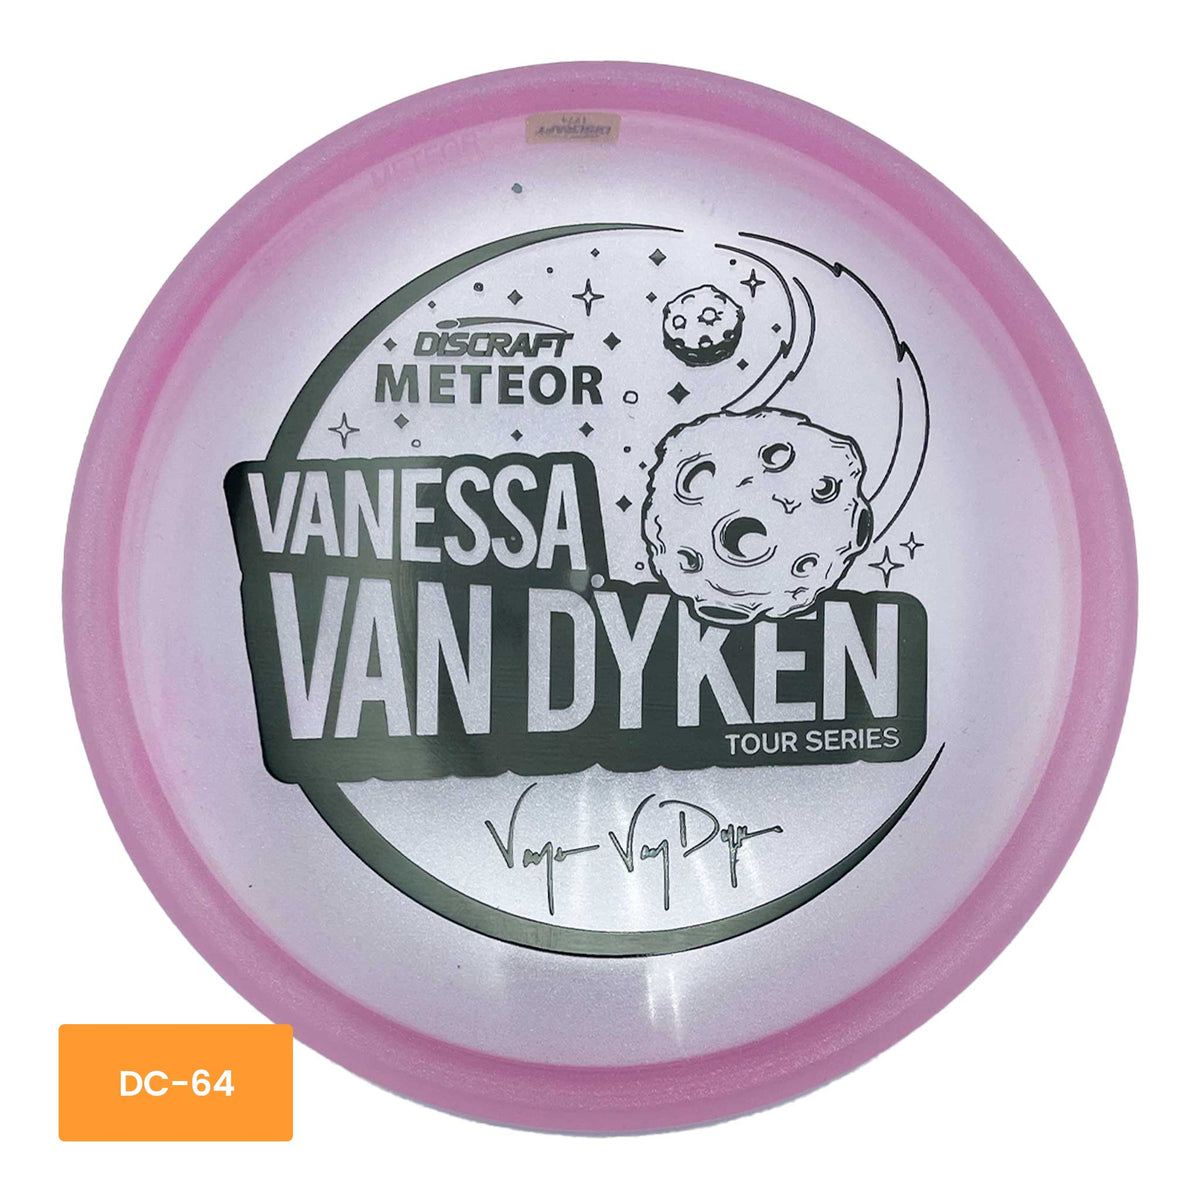 Discraft 2021 Vanessa Van Dyken Tour Series Meteor midrange